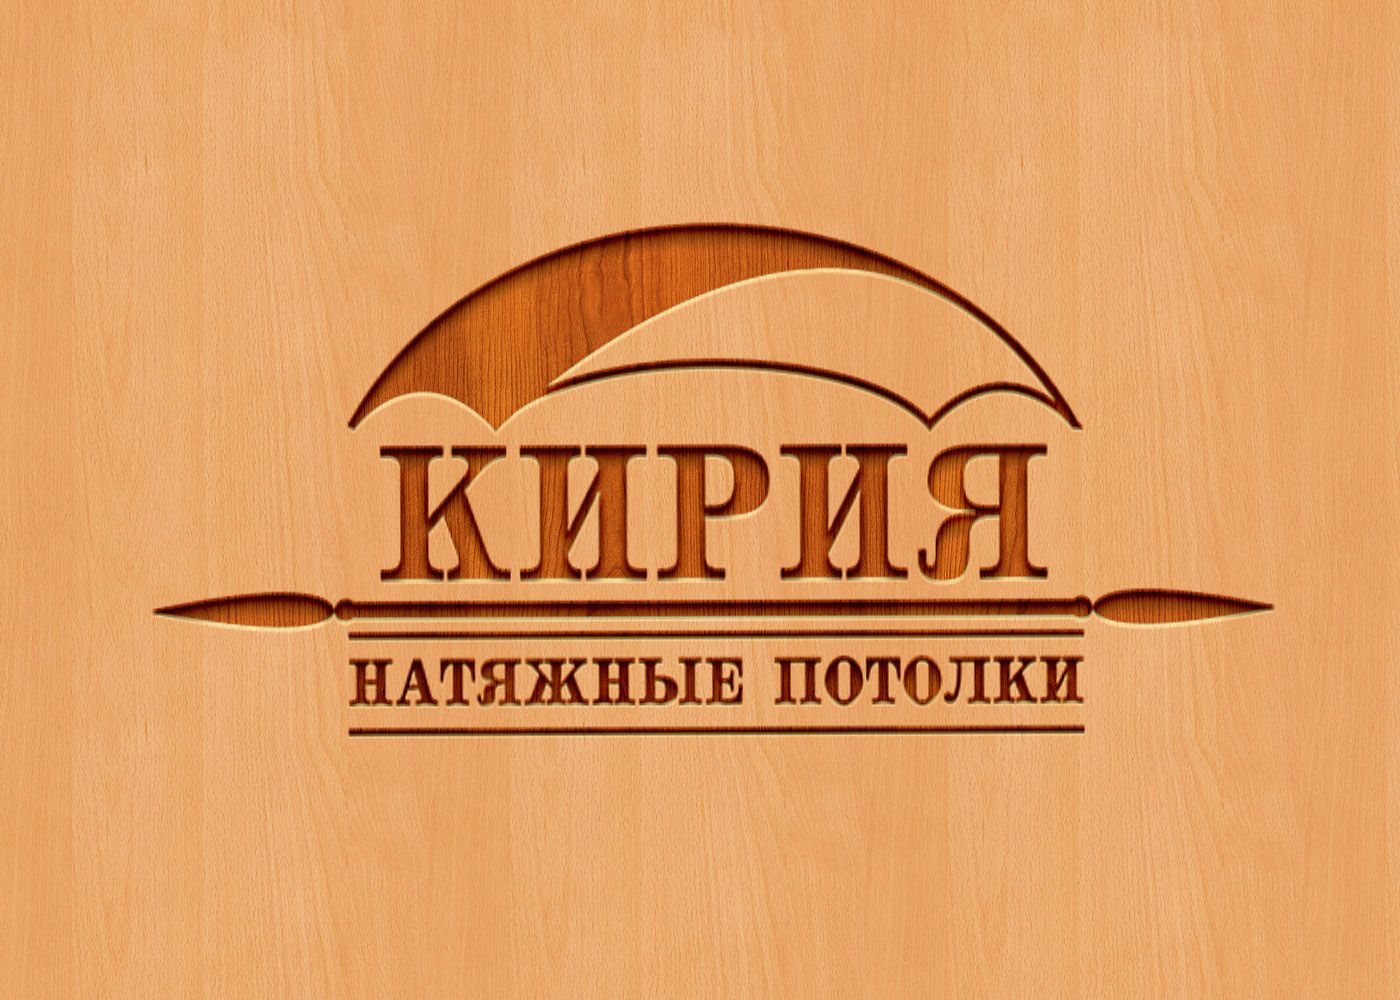 Логотип для Фабрика натяжных потолков 